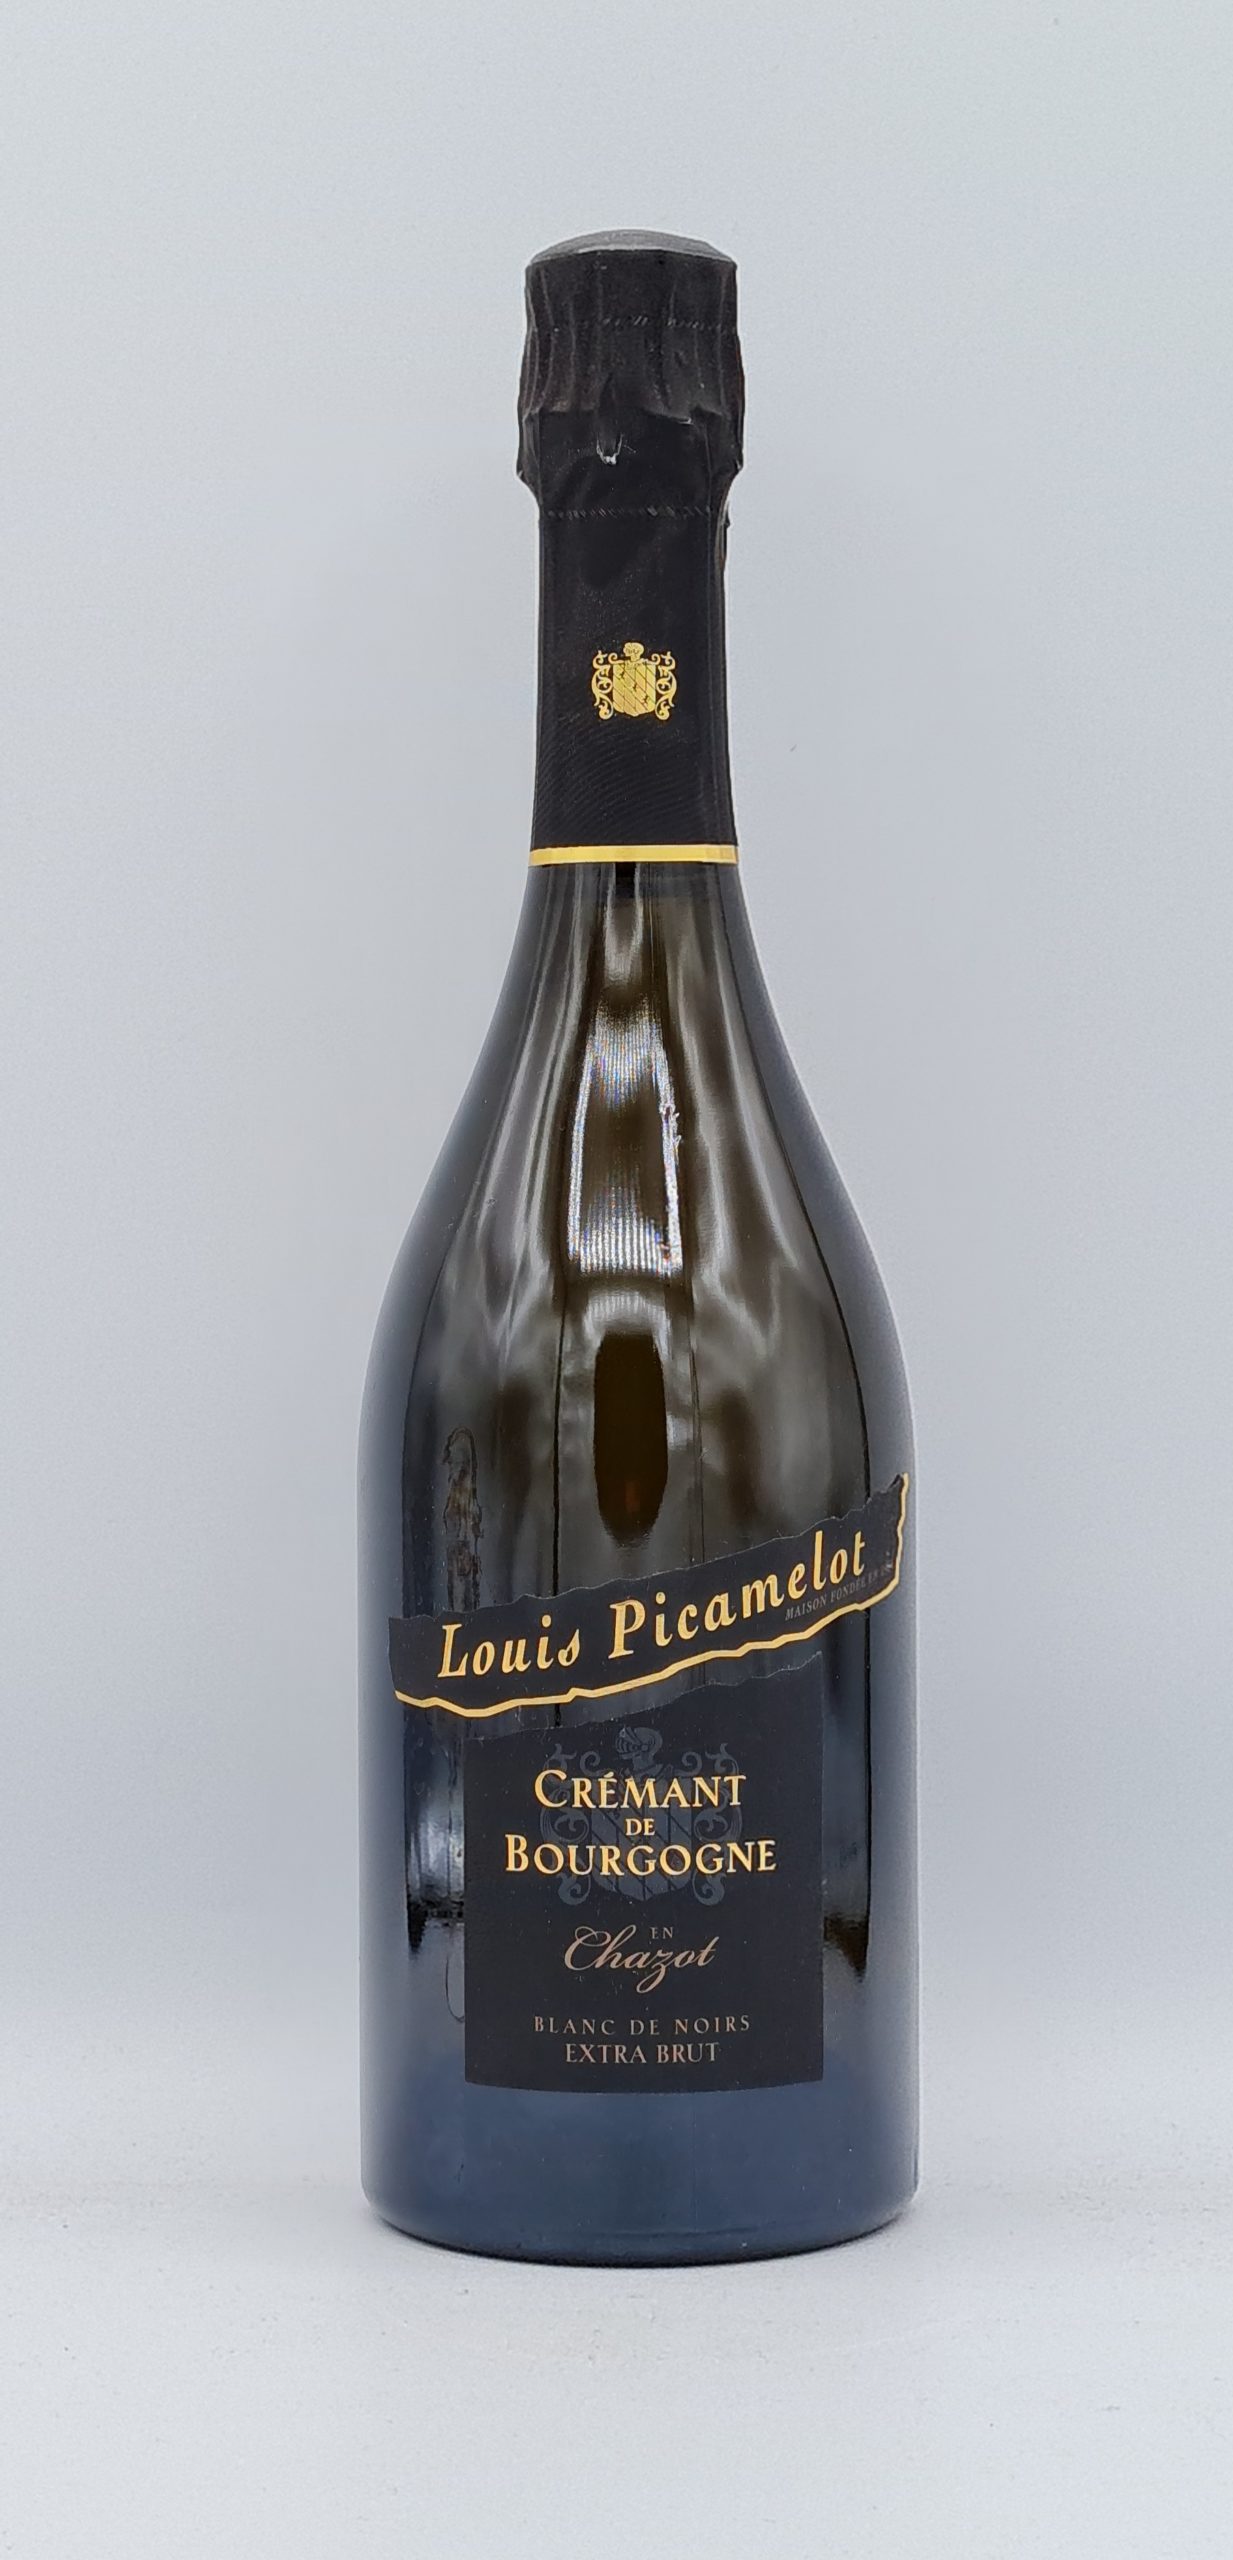 Crémant de Bourgogne blanc de noir “Chazot” Maison Picamelot